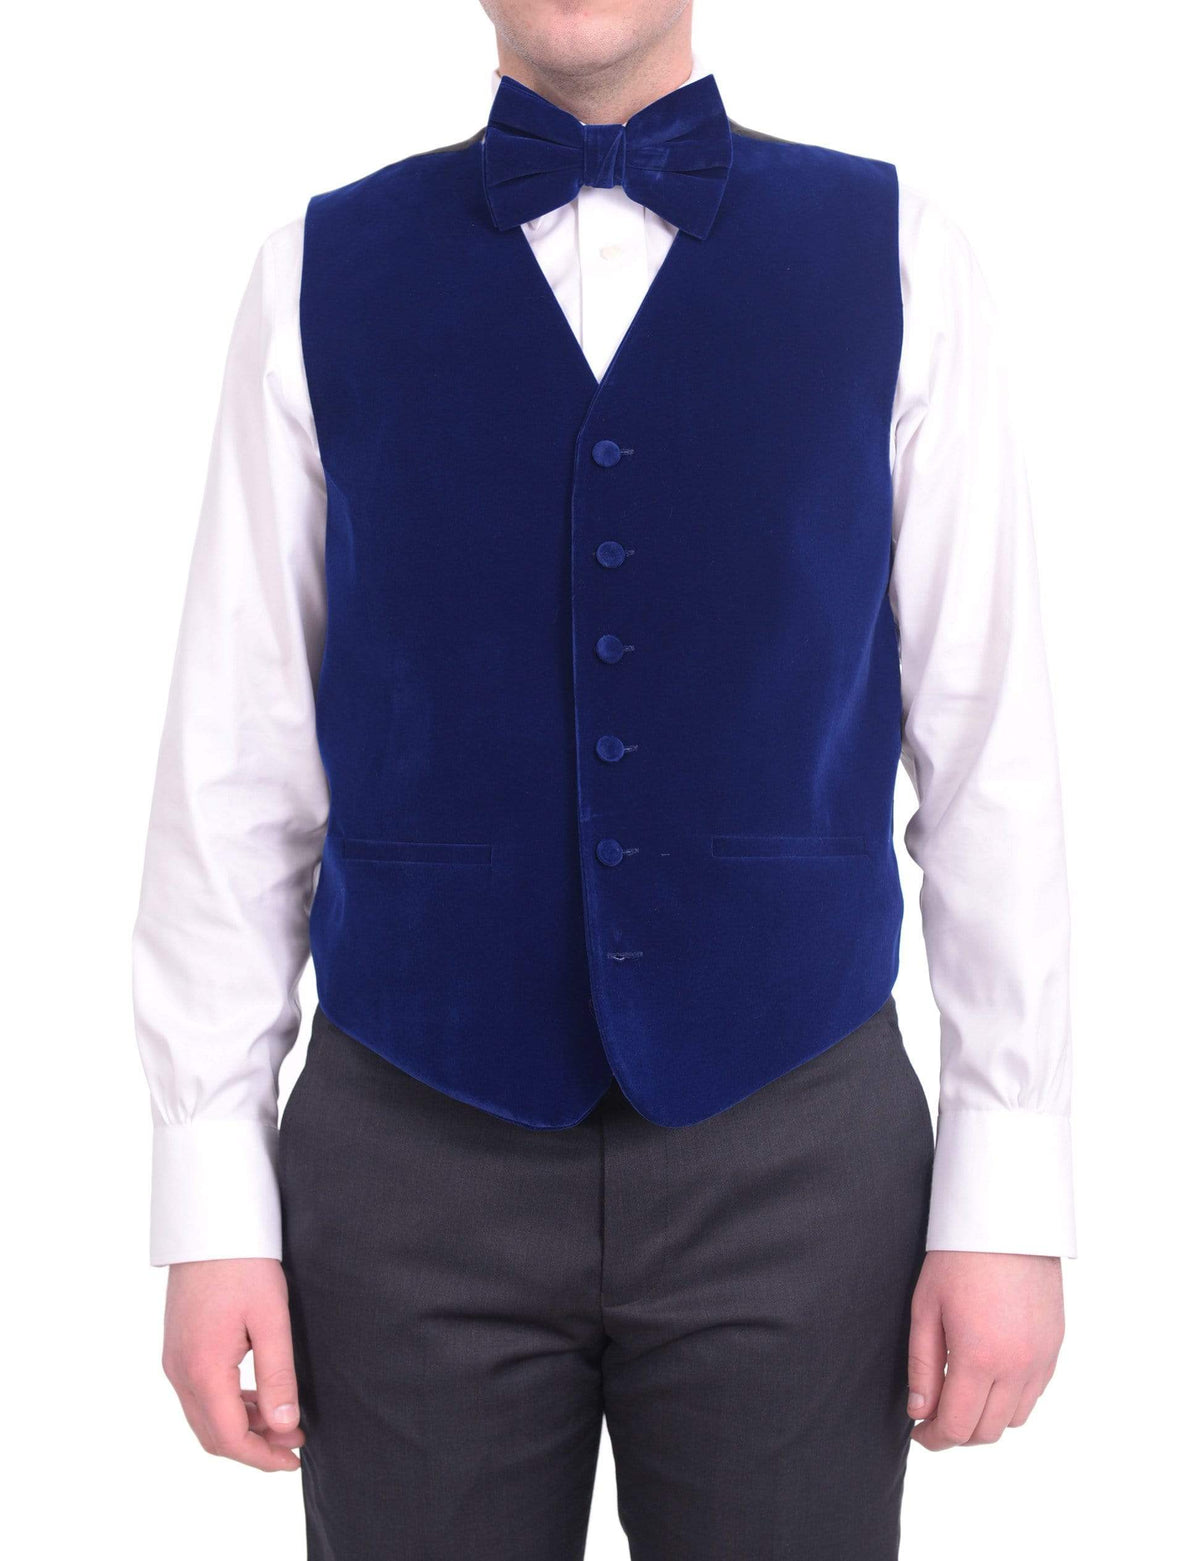 Steven Land Solid Sapphire Blue Velvet Velour Vest With Necktie &amp; Bowtie Set - The Suit Depot